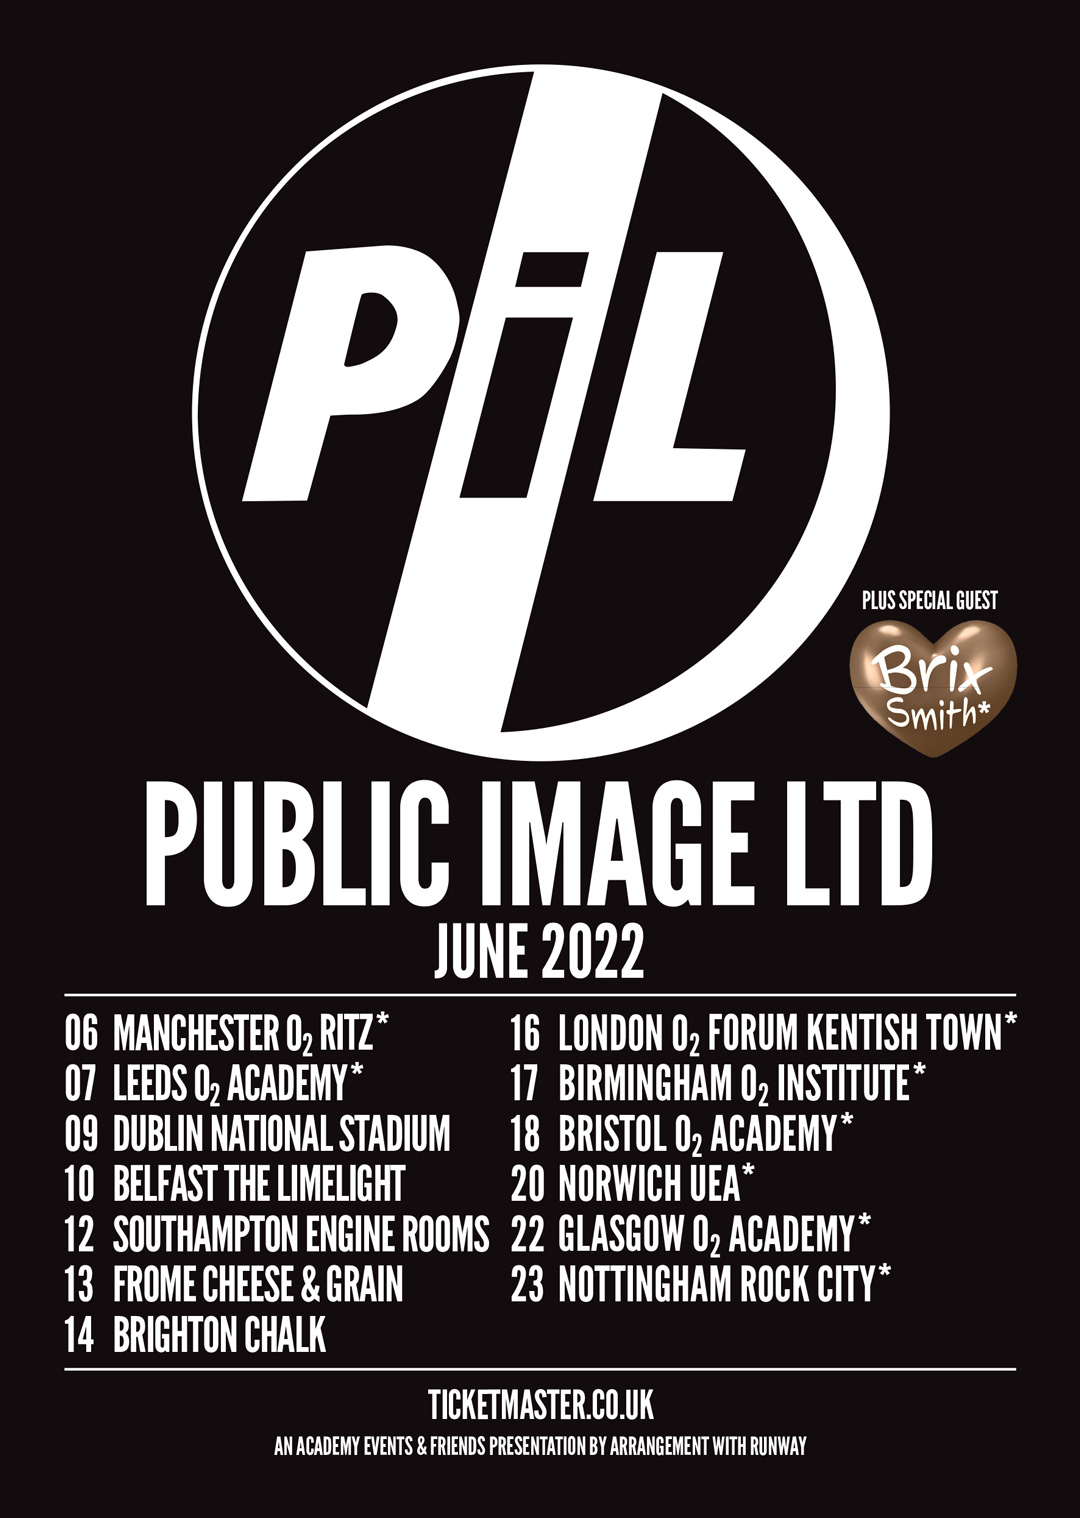 pil tour dates 2023 uk